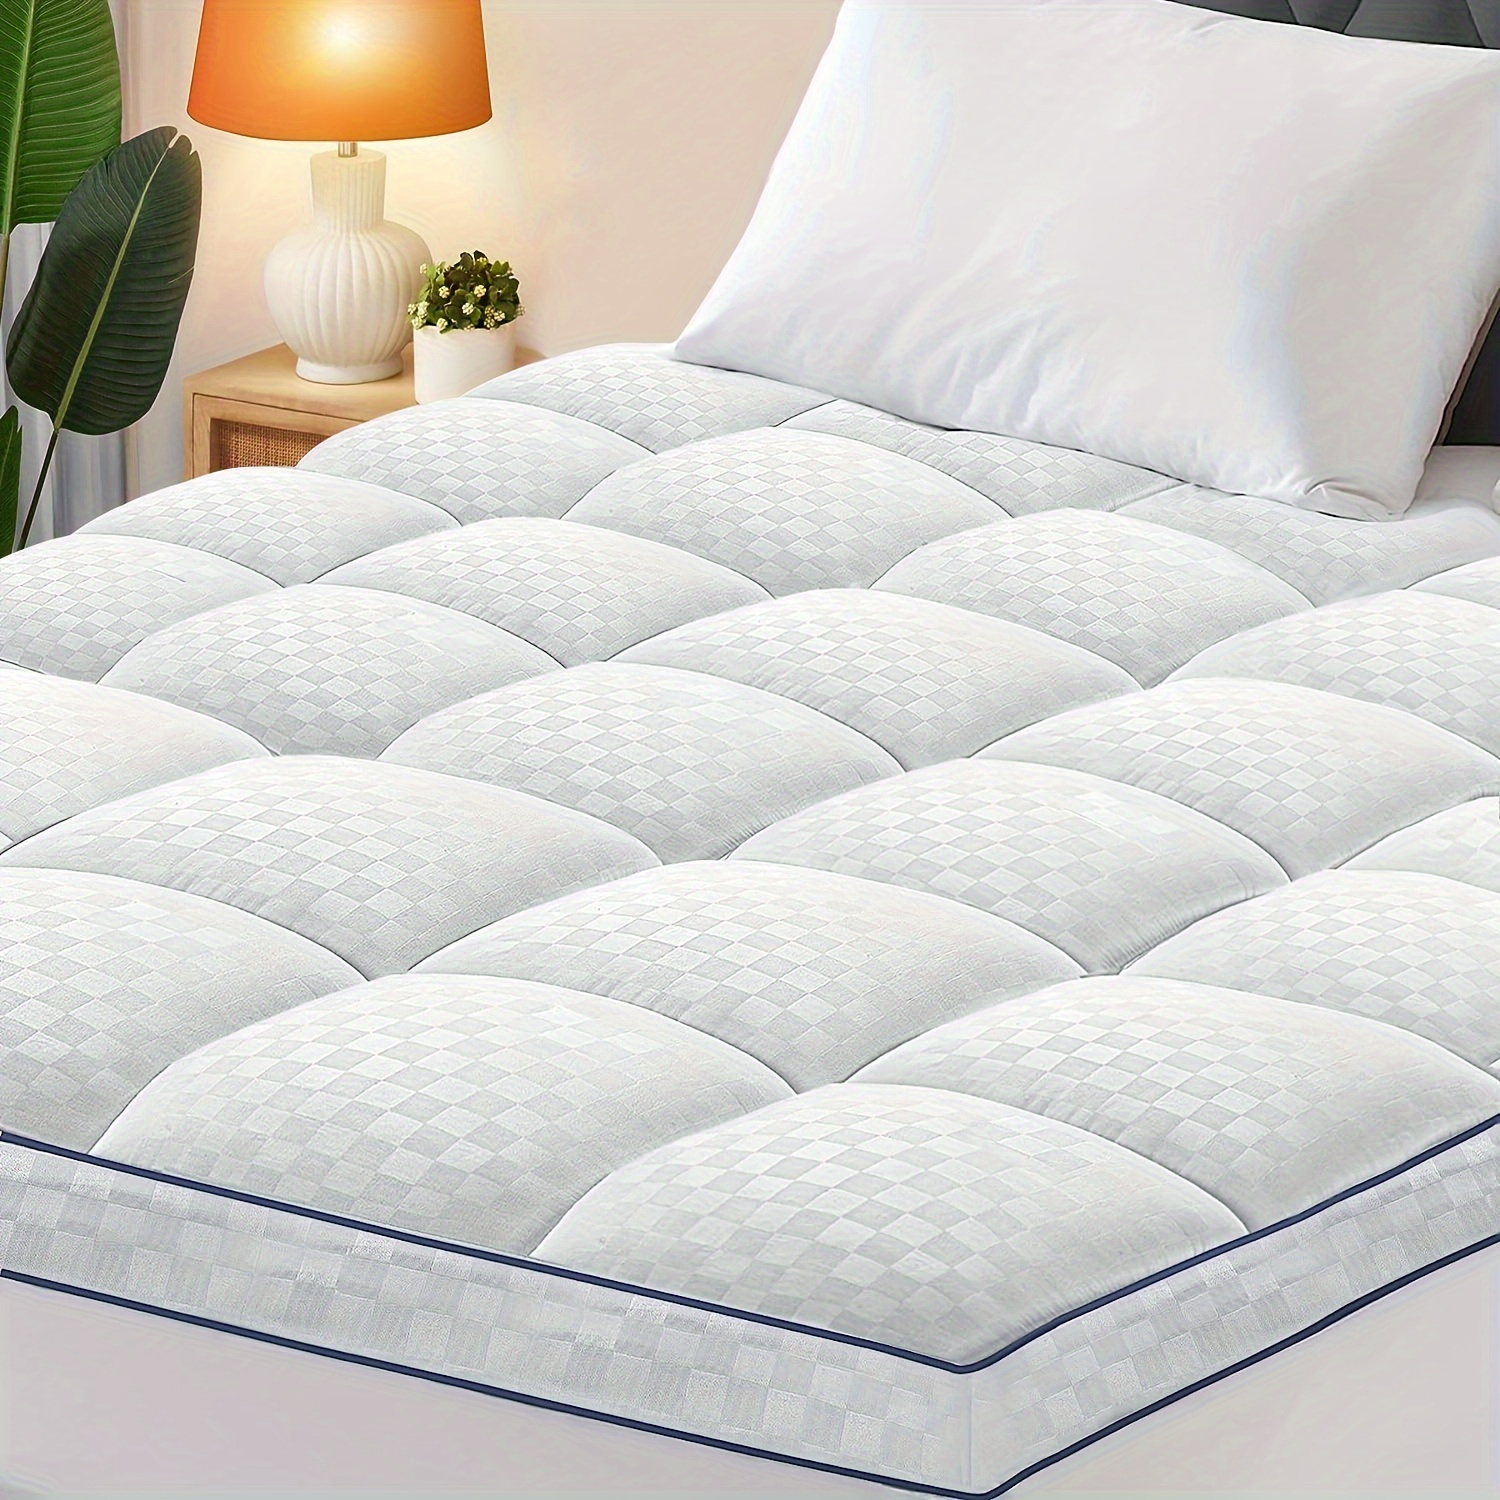 Protector de colchón impermeable de bambú individual XL, funda de colchón  refrescante y transpirable, funda de cama de bolsillo profundo, elástica a